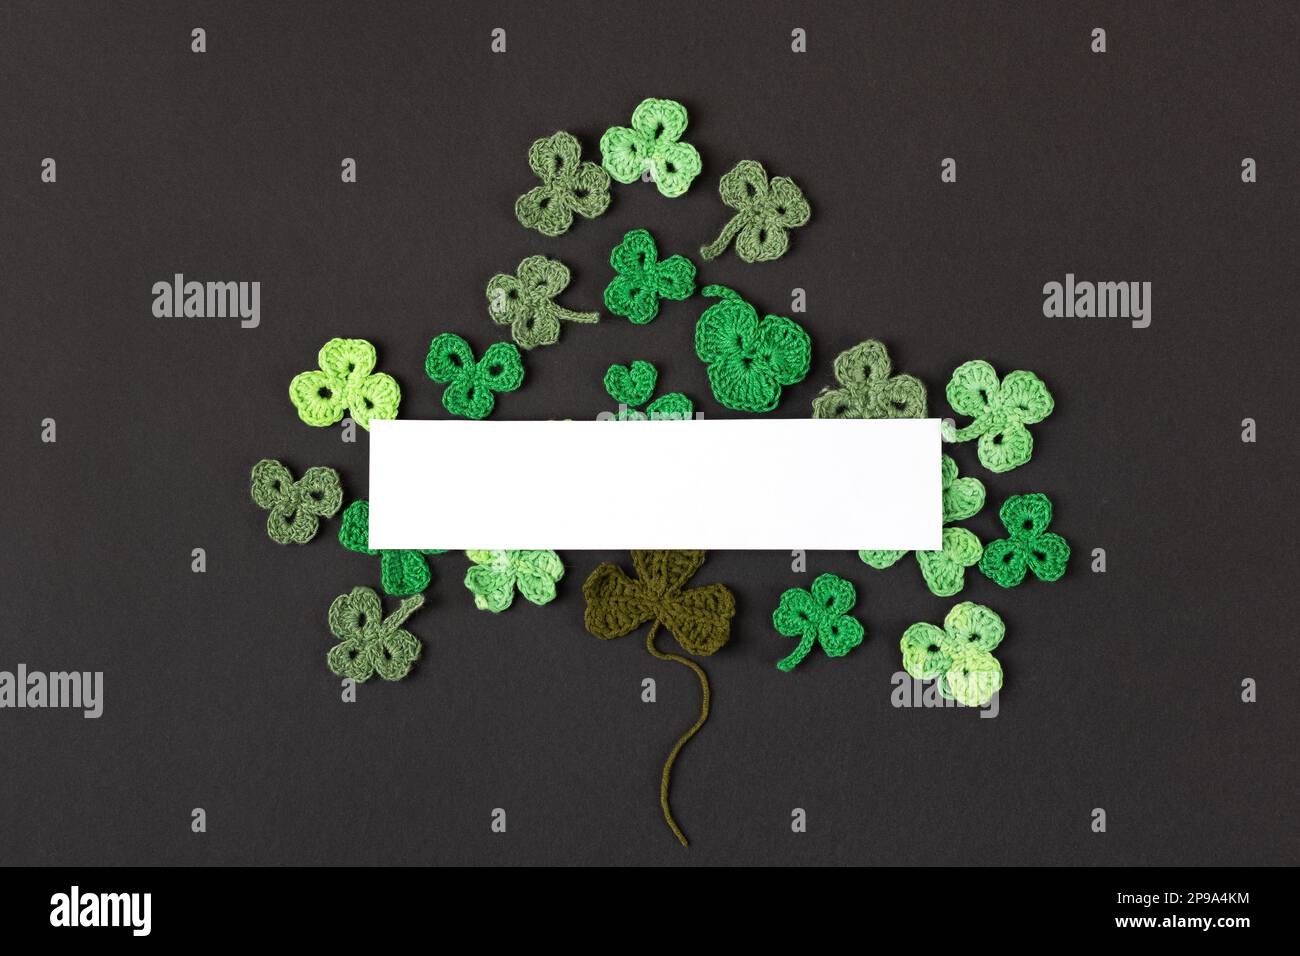 Concept de la St Patrick. Composition en shampoings verts tricotés sous forme de trèfle à trois feuilles sur fond noir. Affiche des fêtes et tricoté Banque D'Images